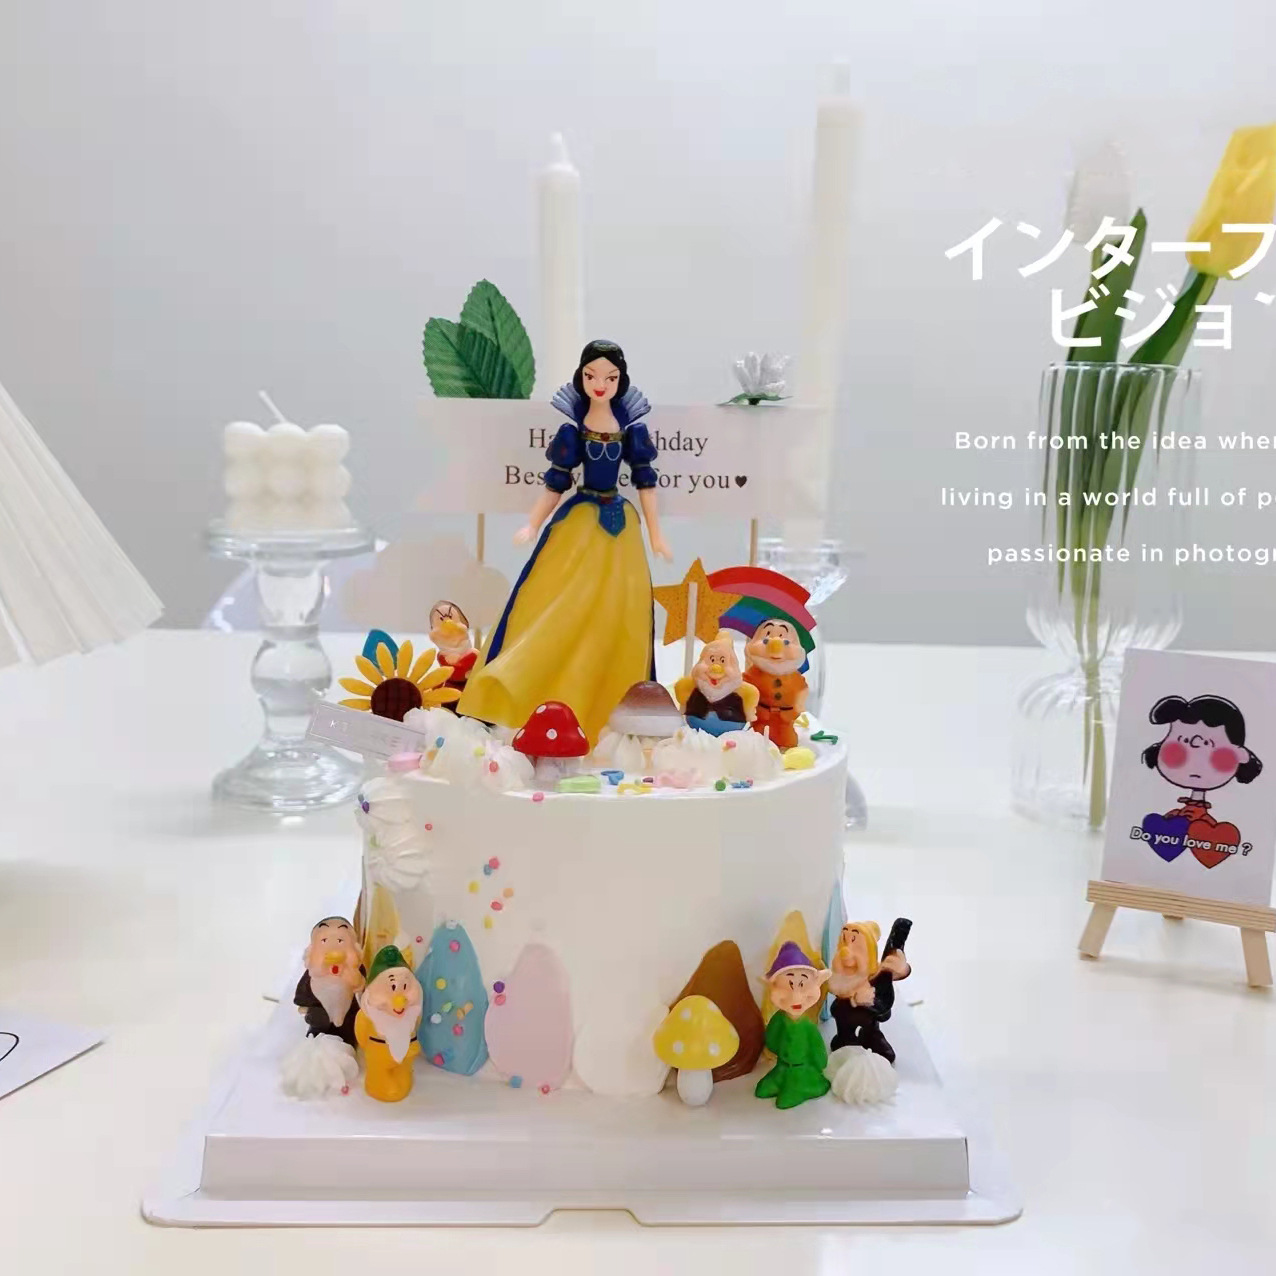 迪士尼白雪公主生日蛋糕 - 松松总动员-迪士尼萌团-小米游戏中心